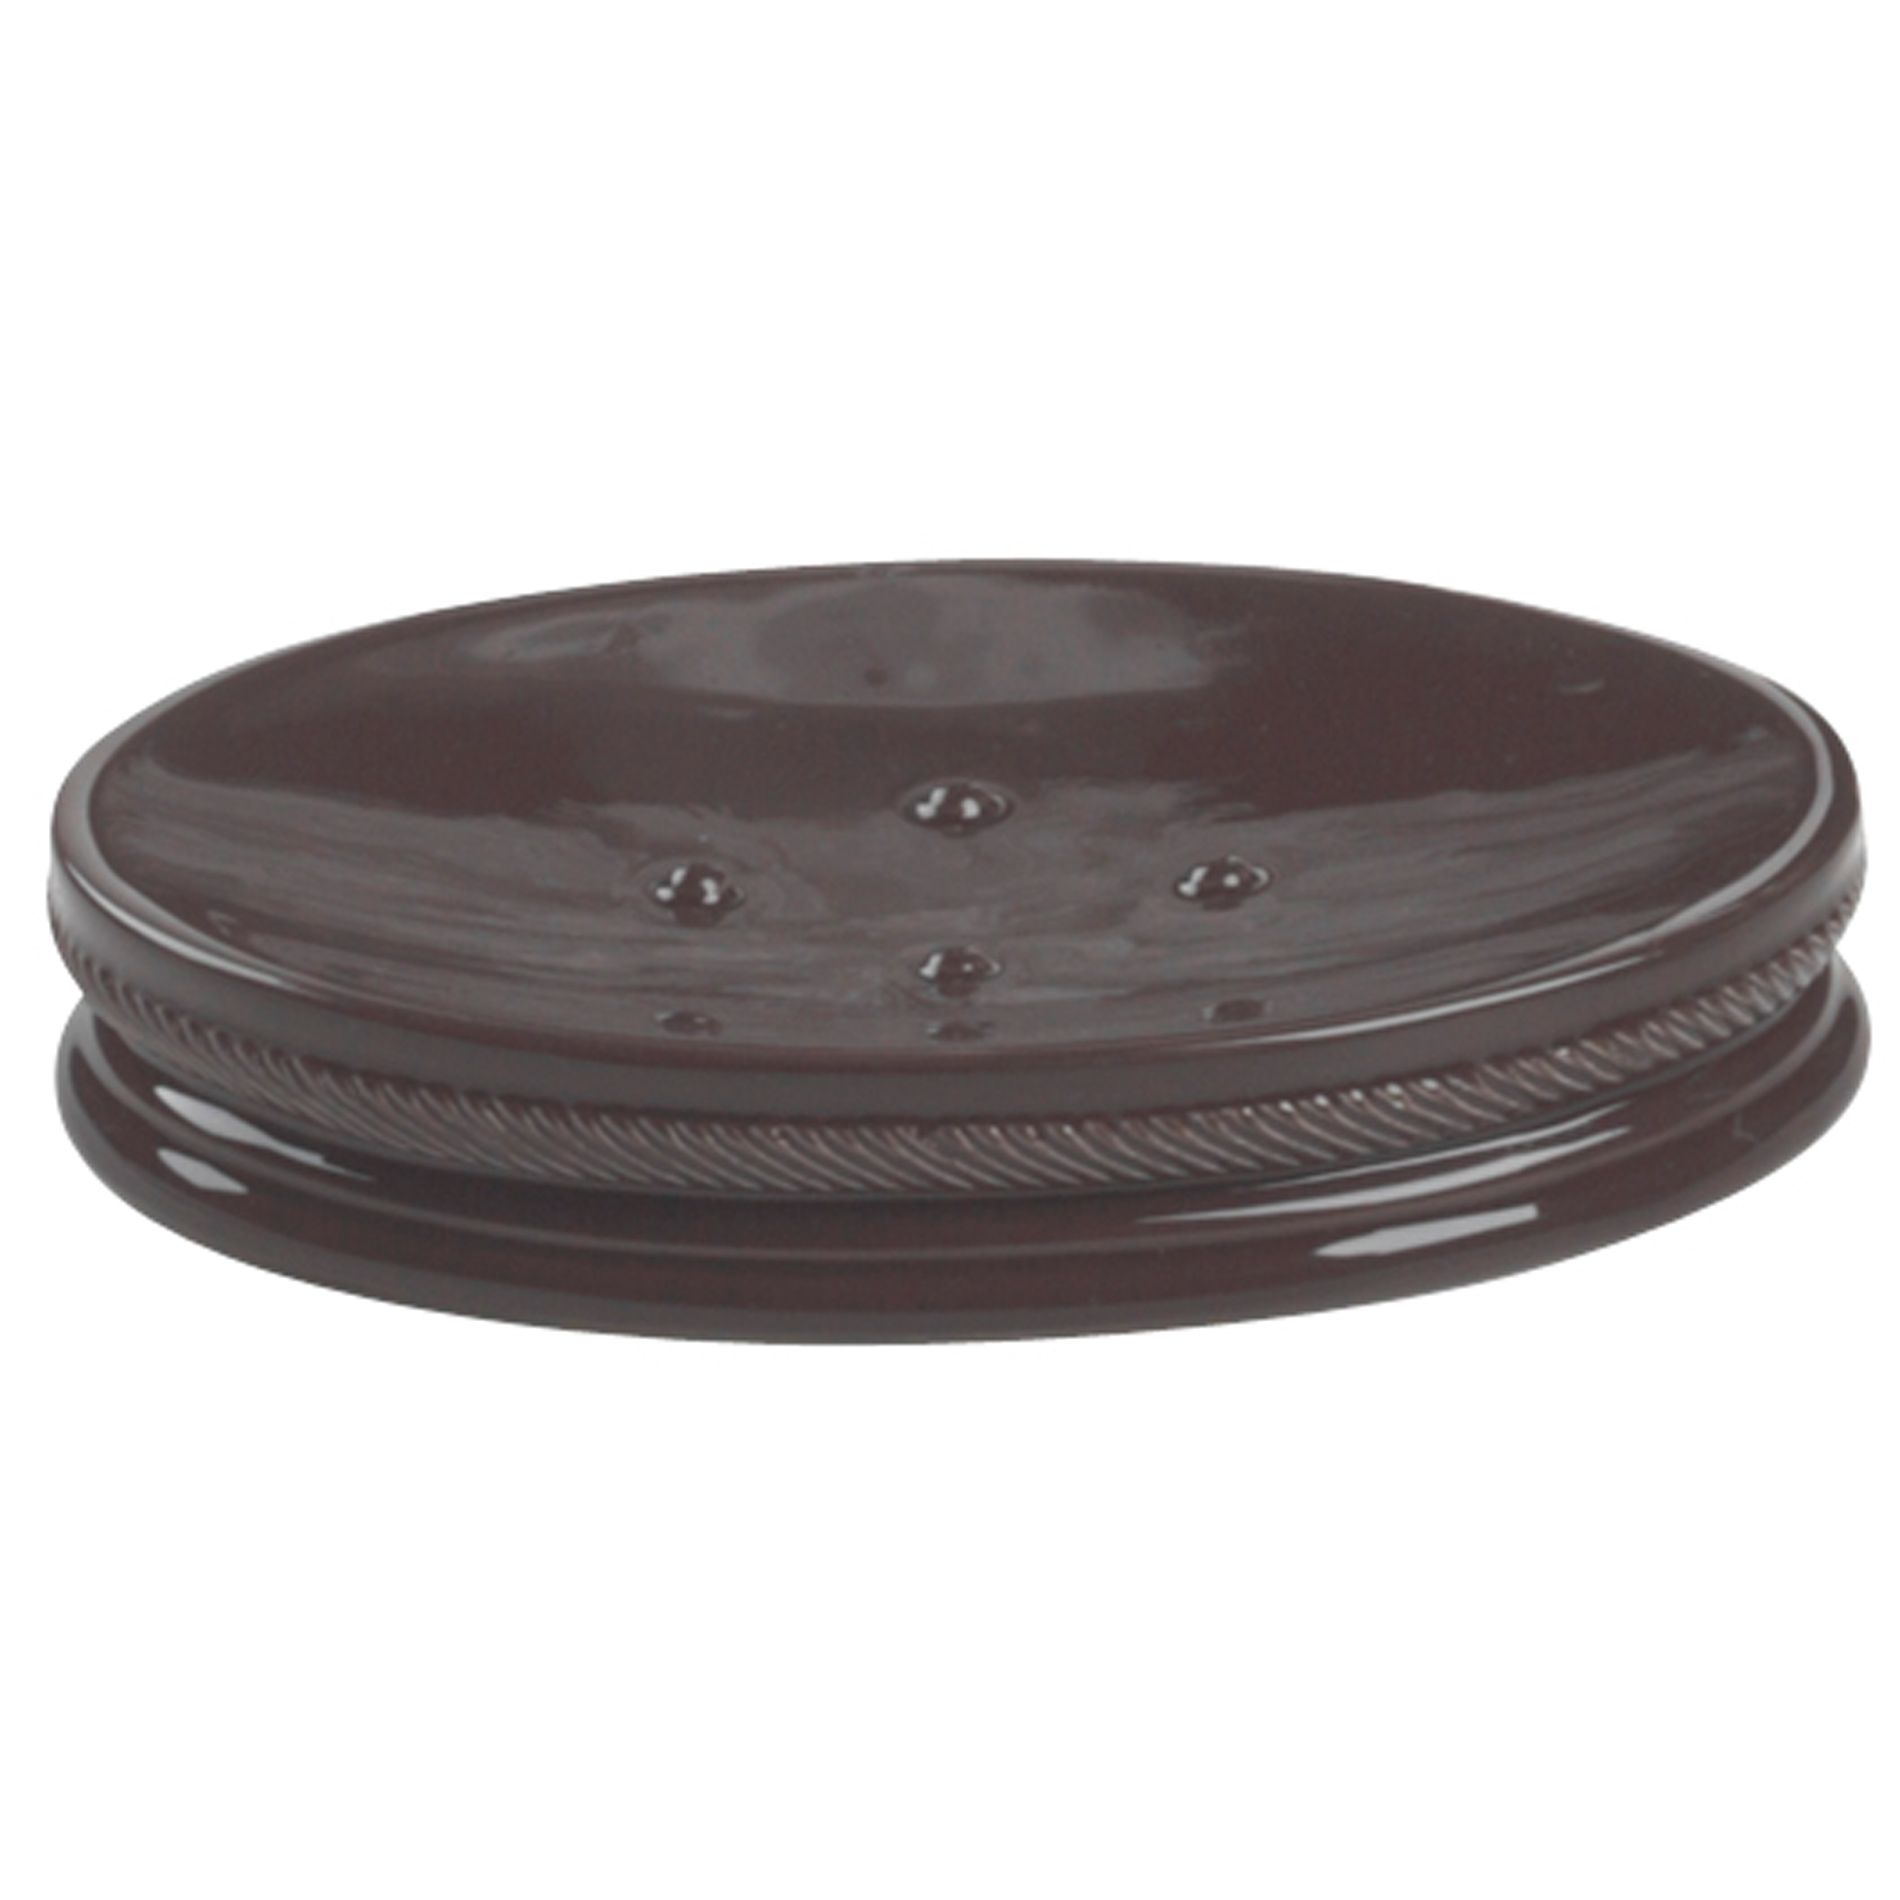 Cannon Chocolate Ceramic Soap Dish